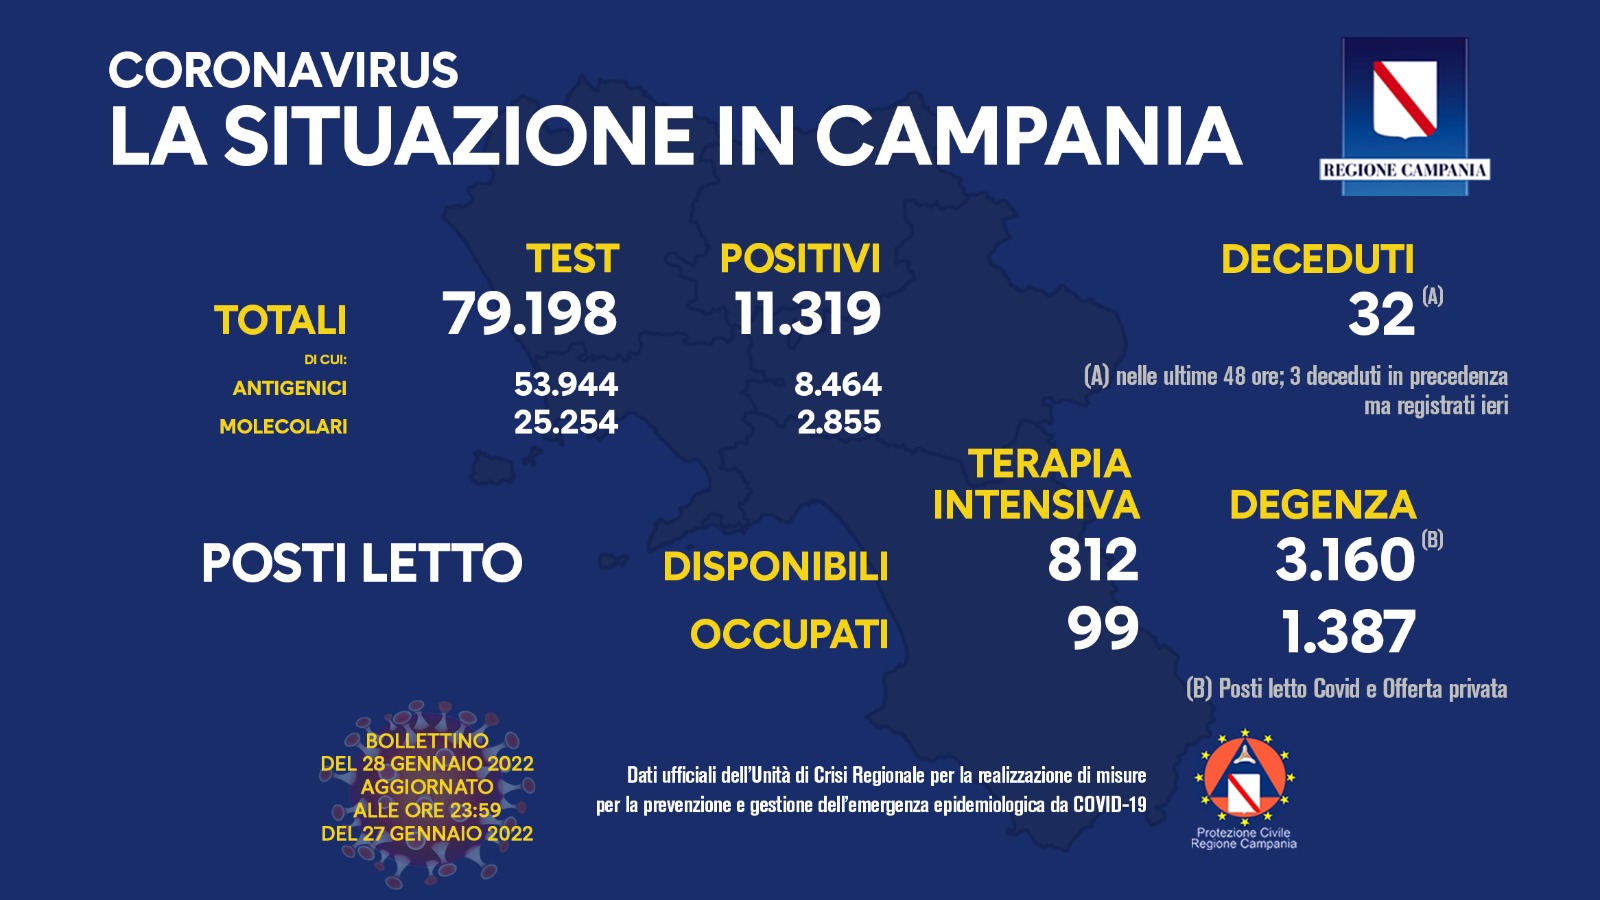 Regione Campania: Coronavirus, Unità di crisi, Bollettino,11.319 casi positivi, 32 decessi